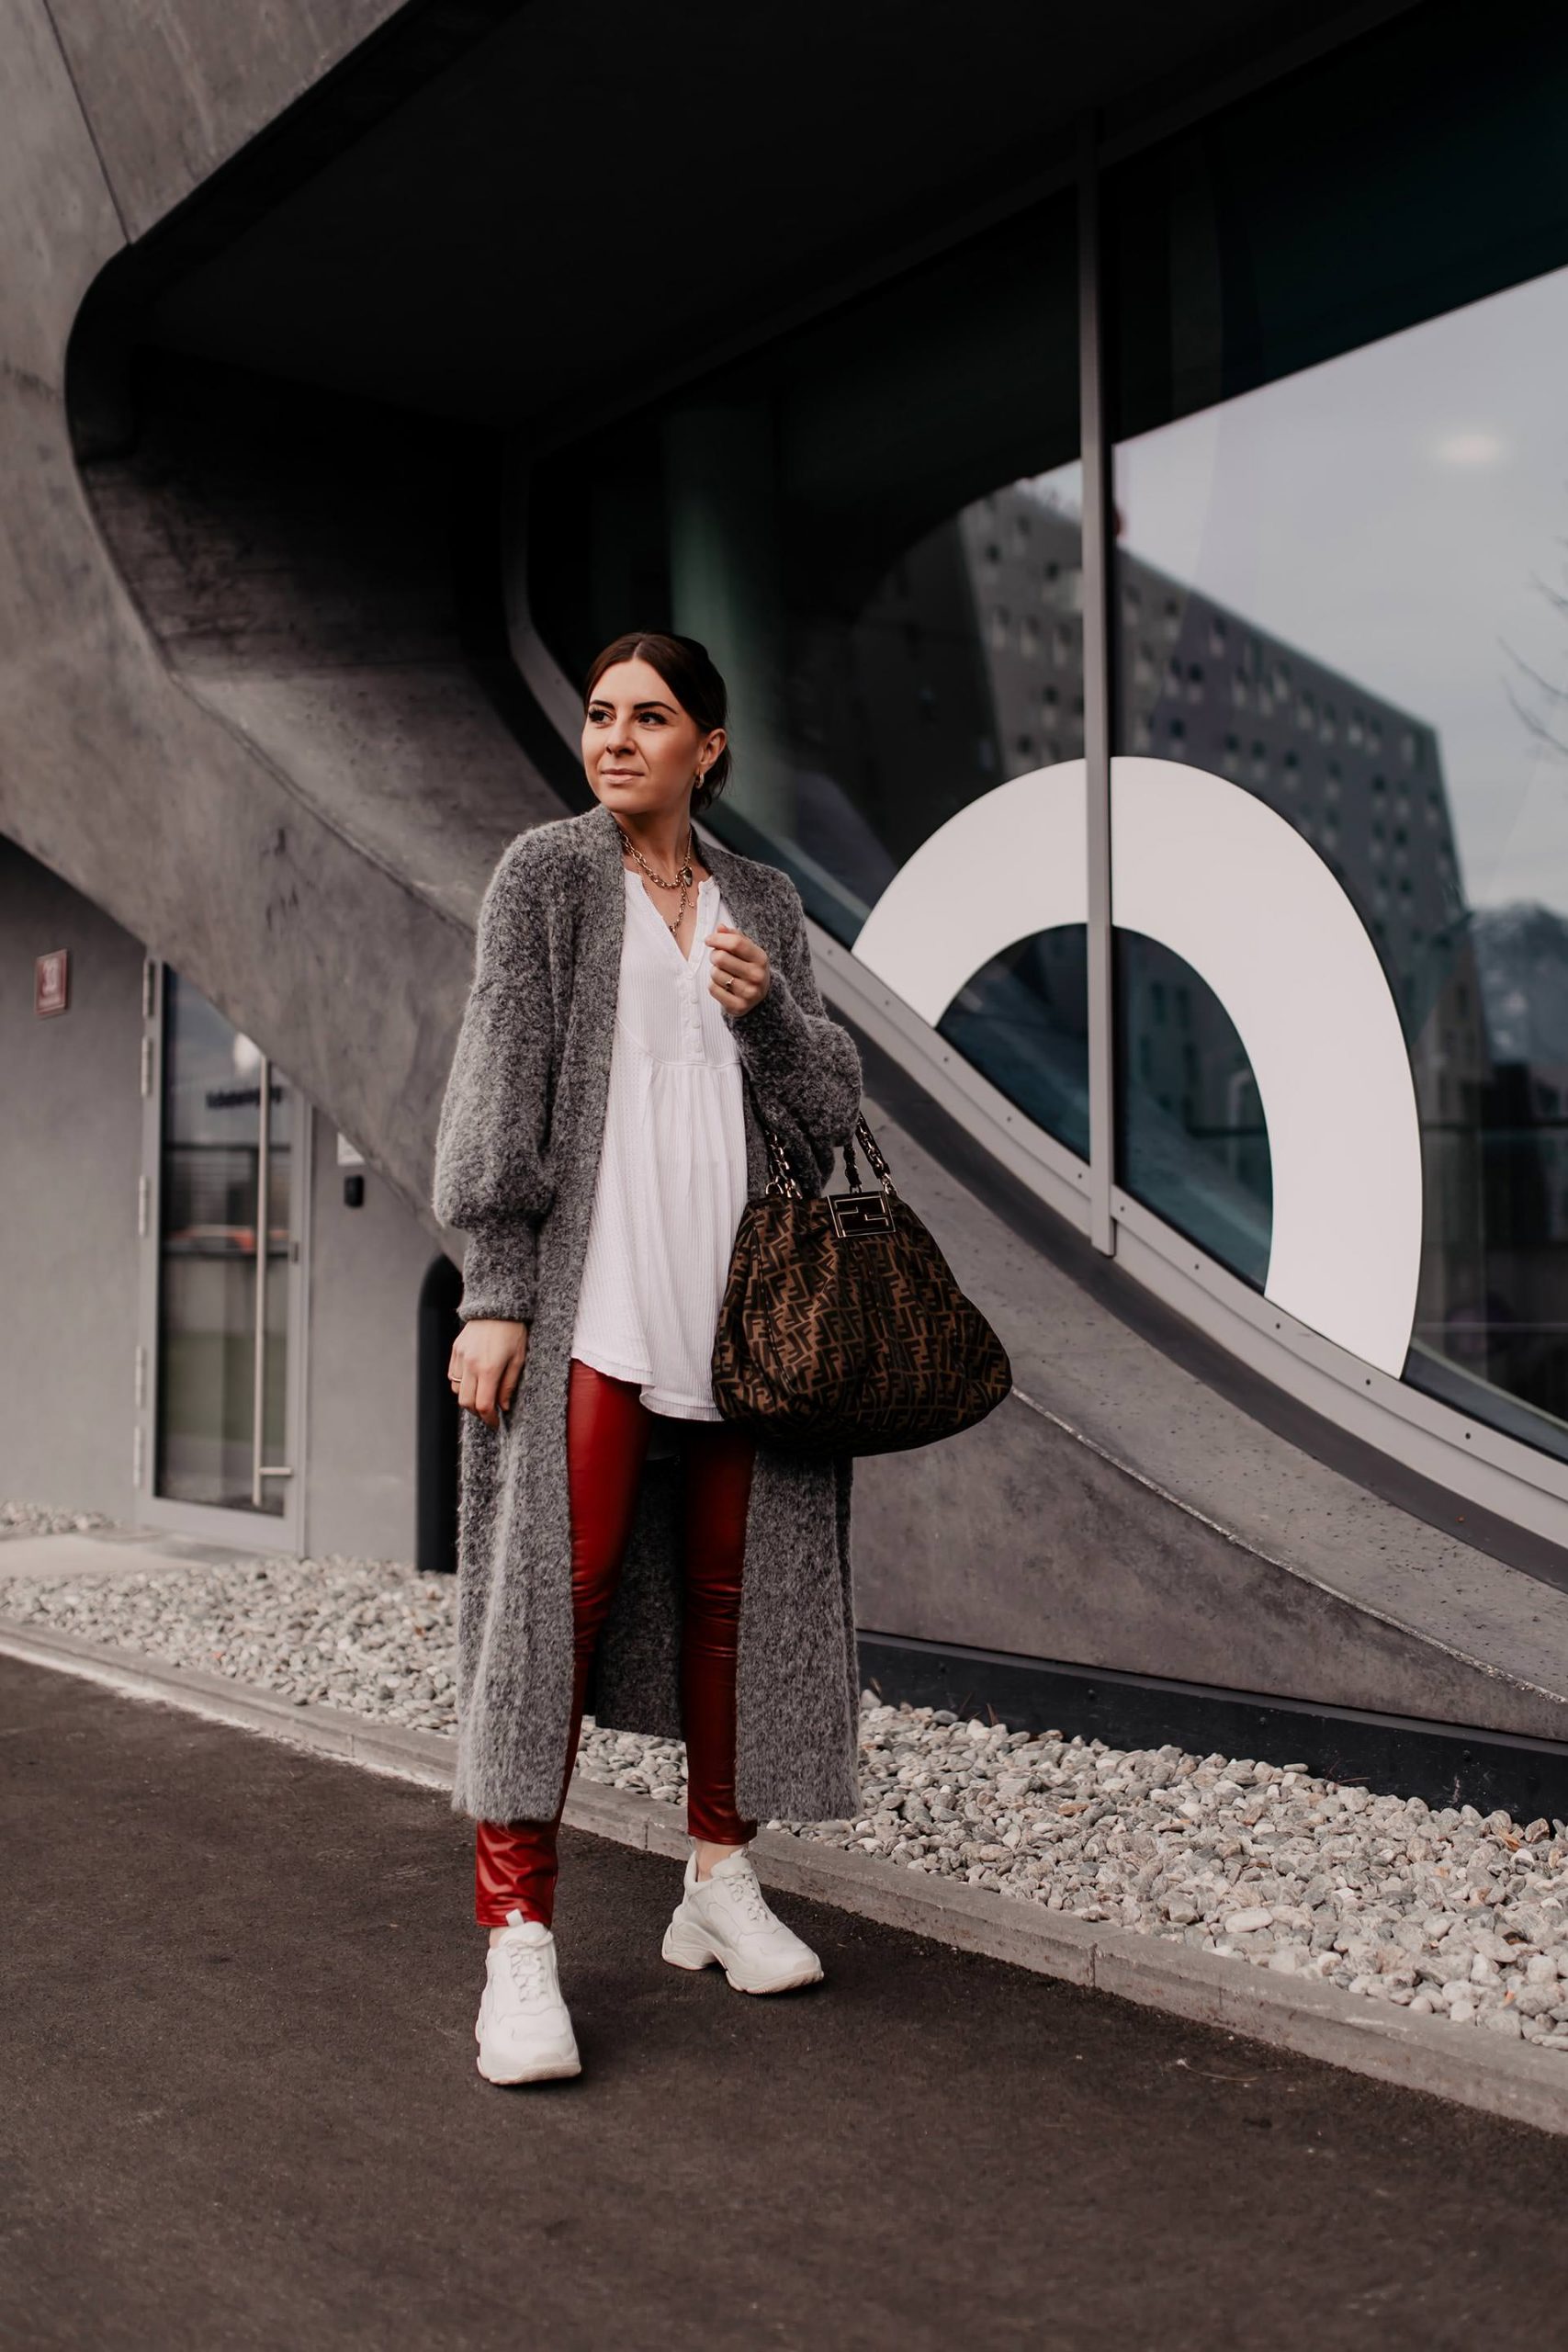 Du willst eine rote Lederhose kombinieren? Am Modeblog verrate ich dir, worauf du achten solltest und wie dir schöne Outfits für den Alltag gelingen! www.whoismocca.com #lederhose #modetrends #outfitoftheday